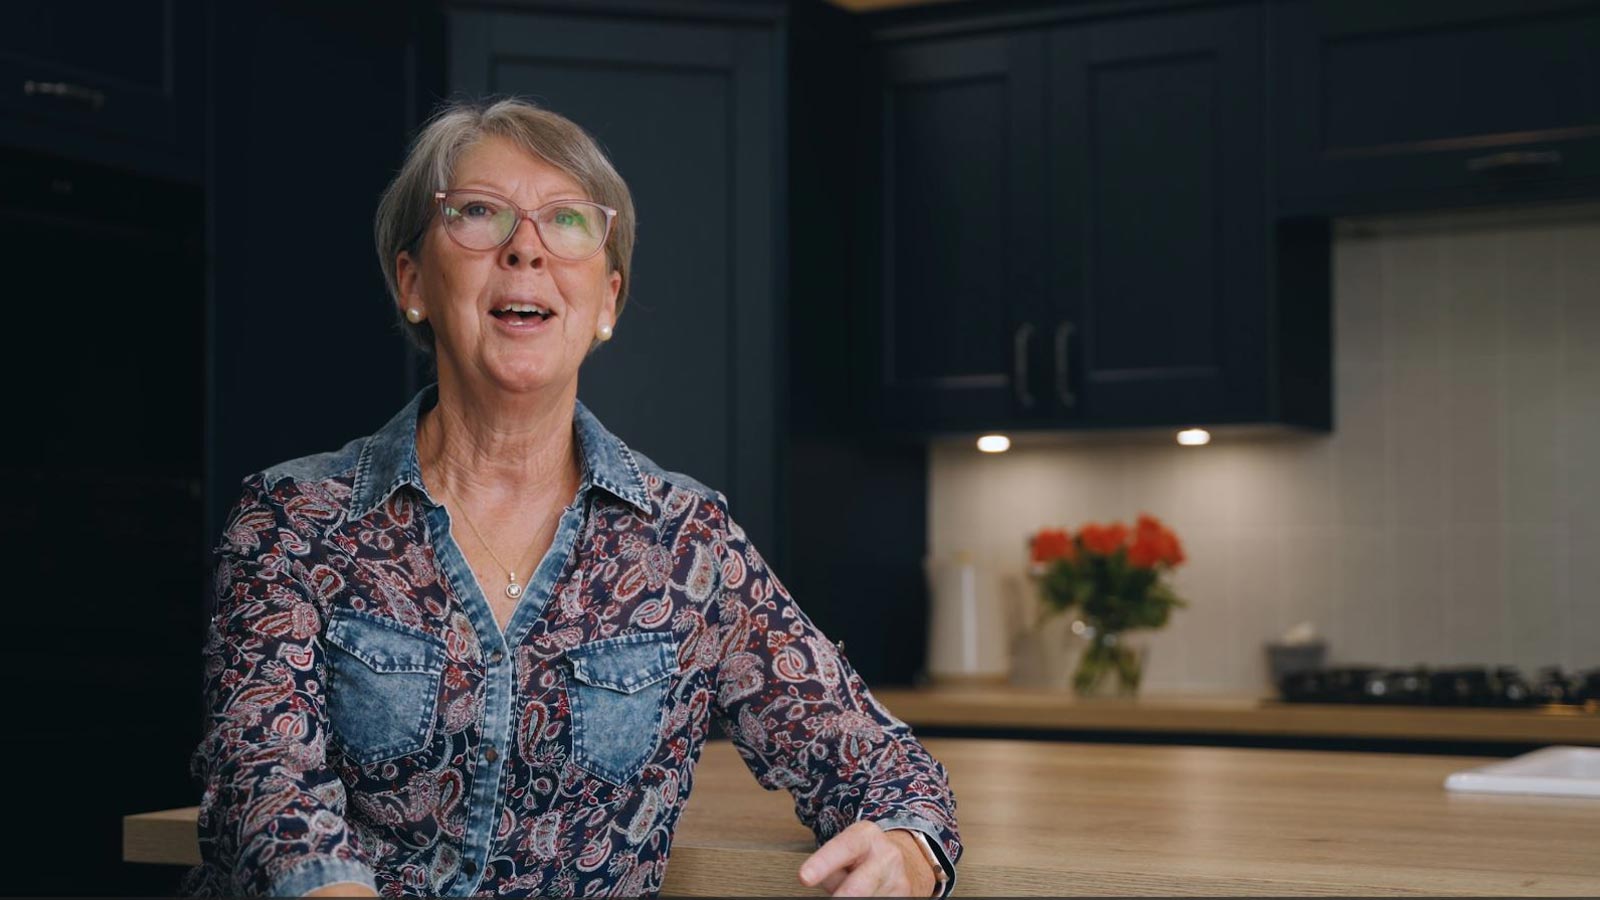 Kitchen remodel recipient Edwina discussing her navy blue kitchen